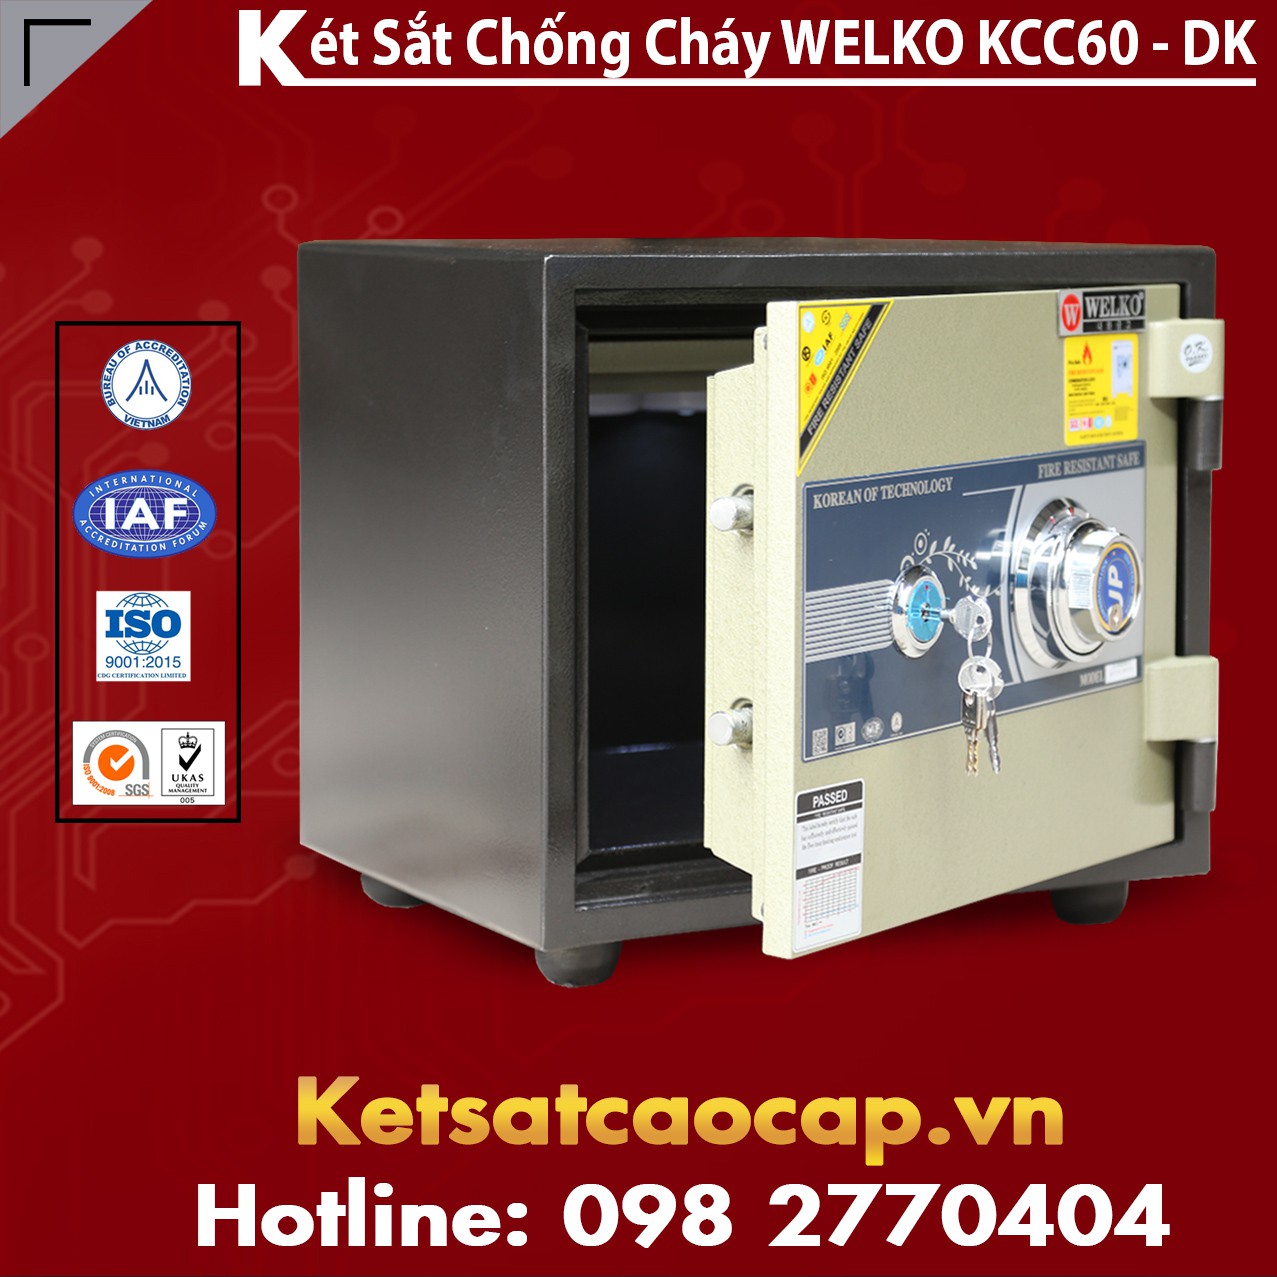 Ket Sat Chong Dap KCC60 - DK